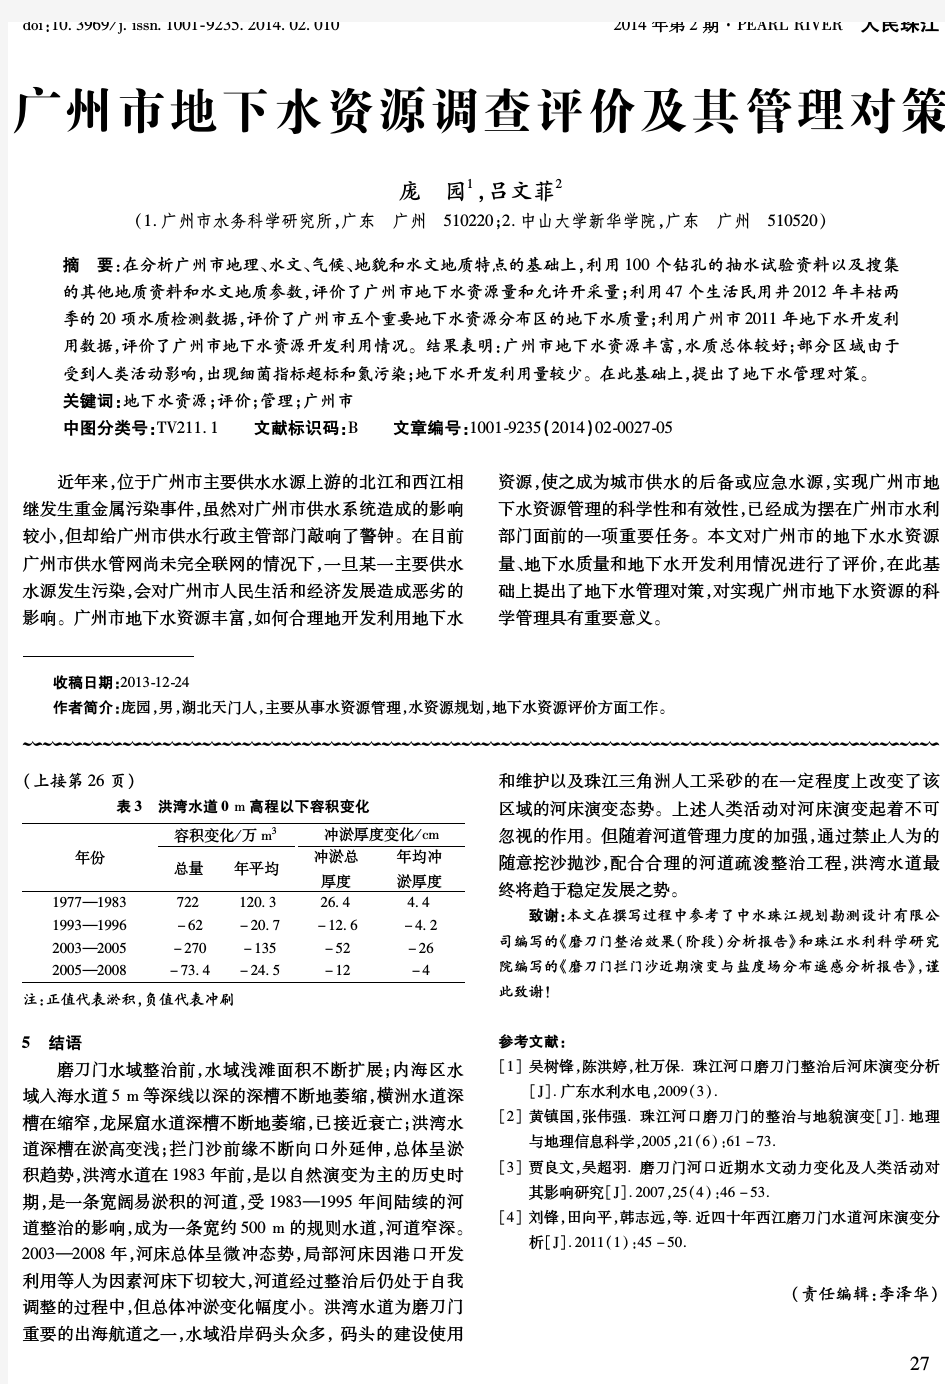 广州市地下水资源调查评价及其管理对策